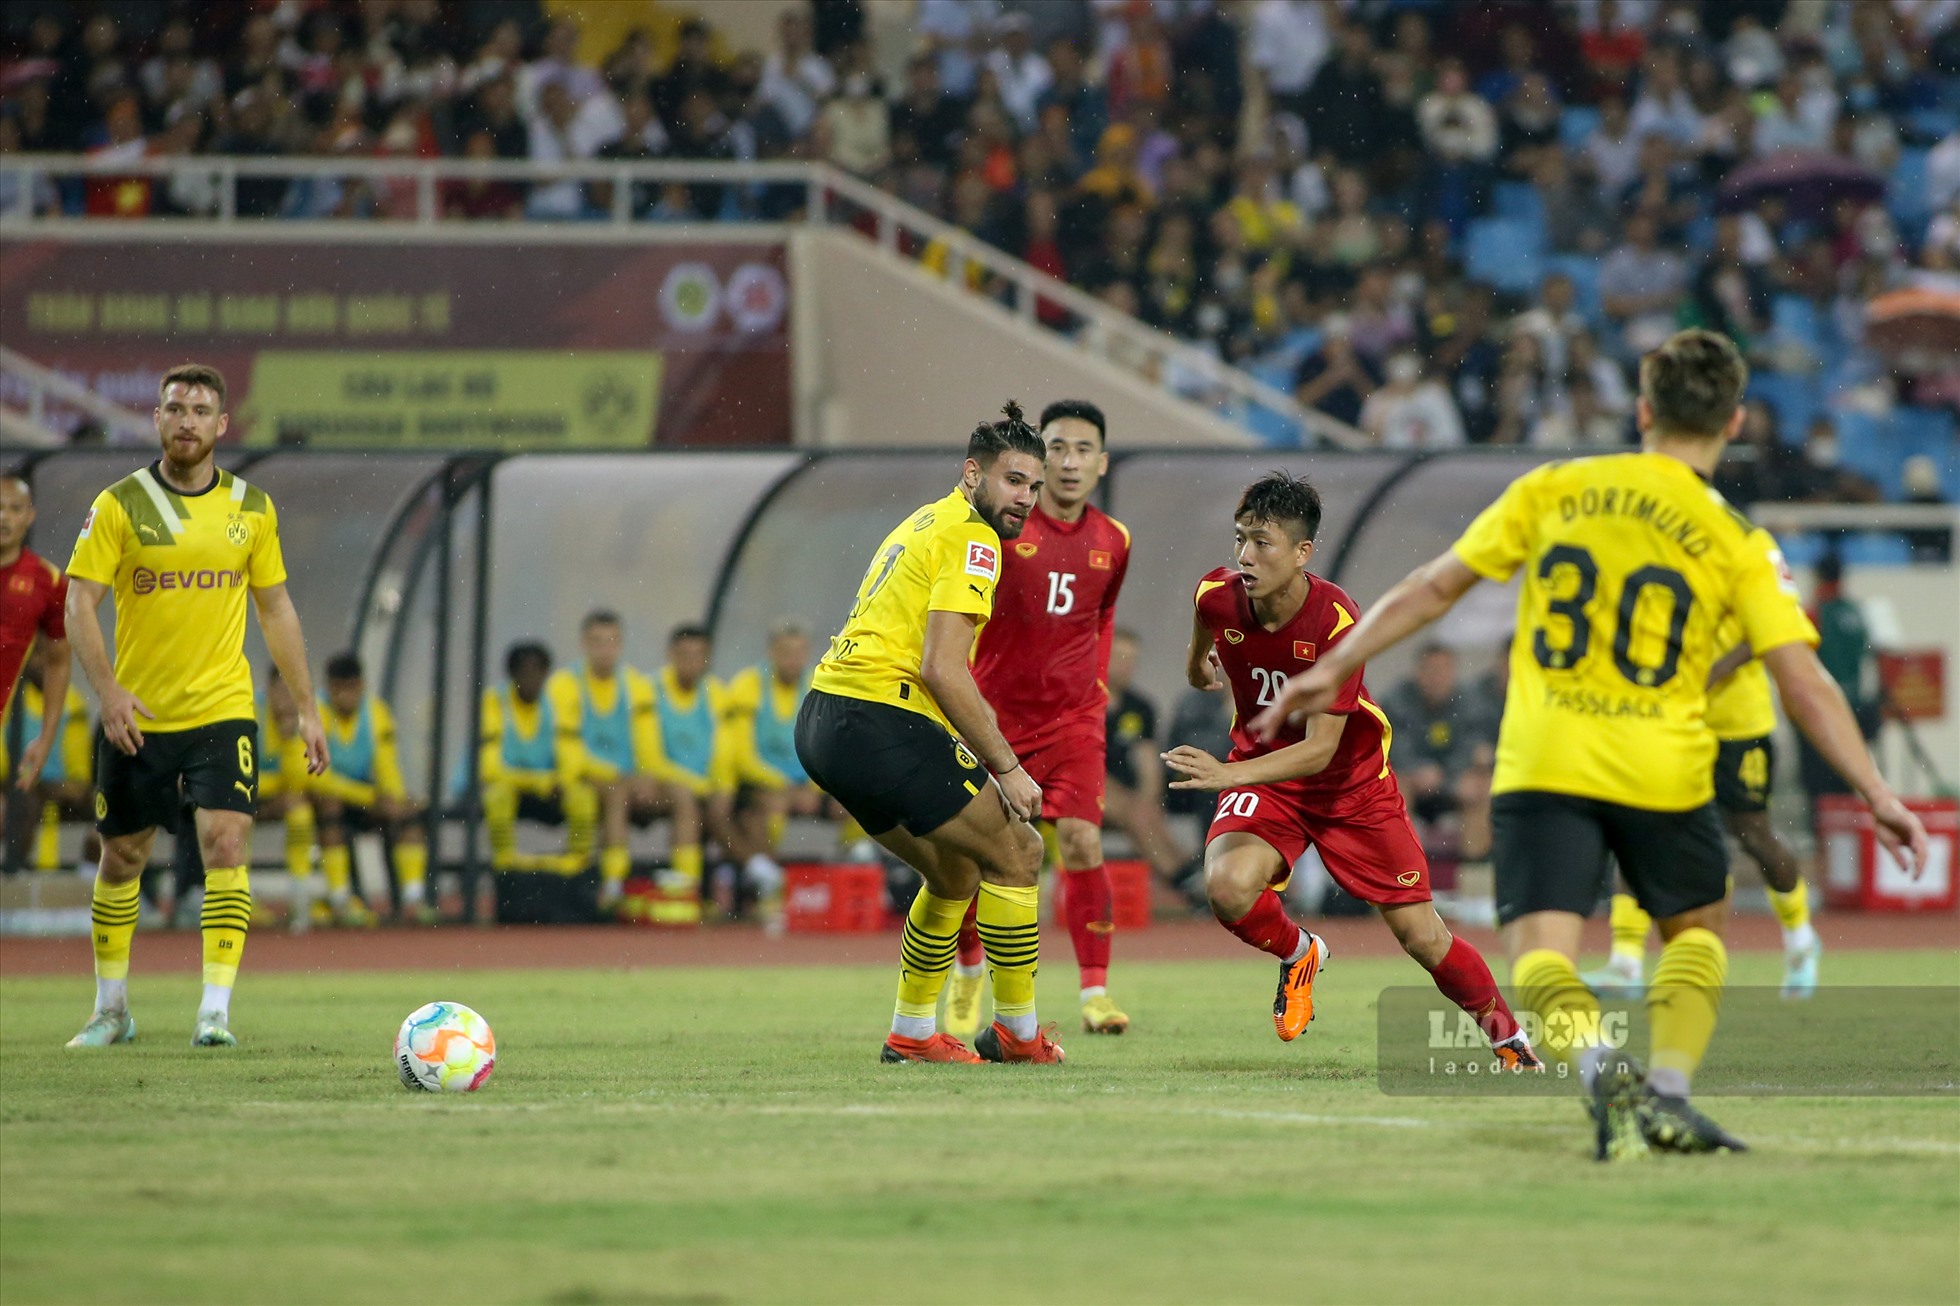 Tuyển Việt Nam cũng không chịu kém cạnh trước đội bóng đến từ Châu Âu và có bàn thắng gỡ hoà ngay trong hiệp 1.